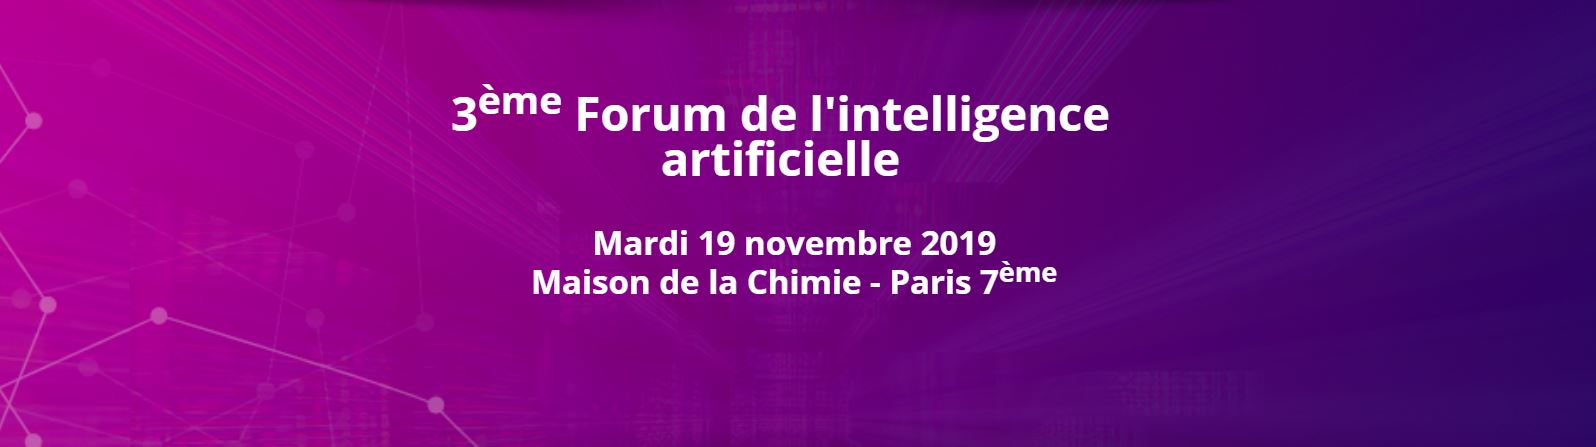 3me dition du forum de l'Intelligence Artificielle le 19 novembre : Intel expose sa vision de l'IA